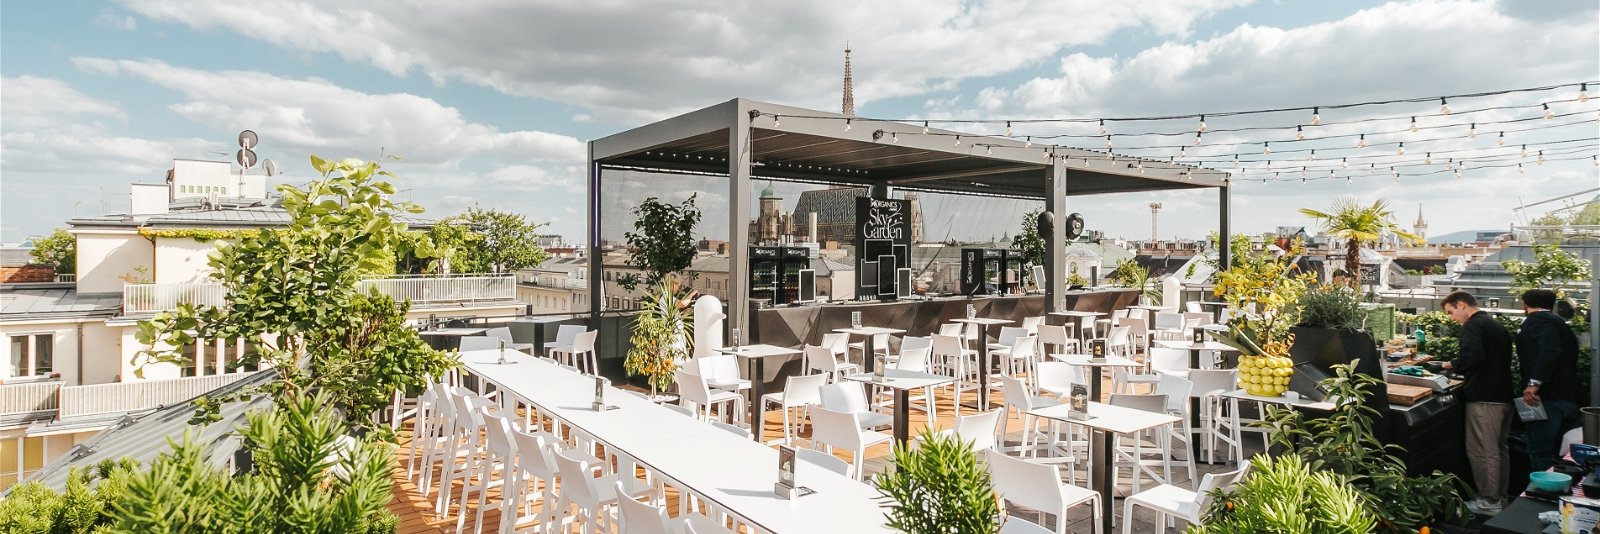 Die Rooftopbar »Organics Sky Garden« wurde zur beliebtesten Apero-Location in Wien gewählt. 